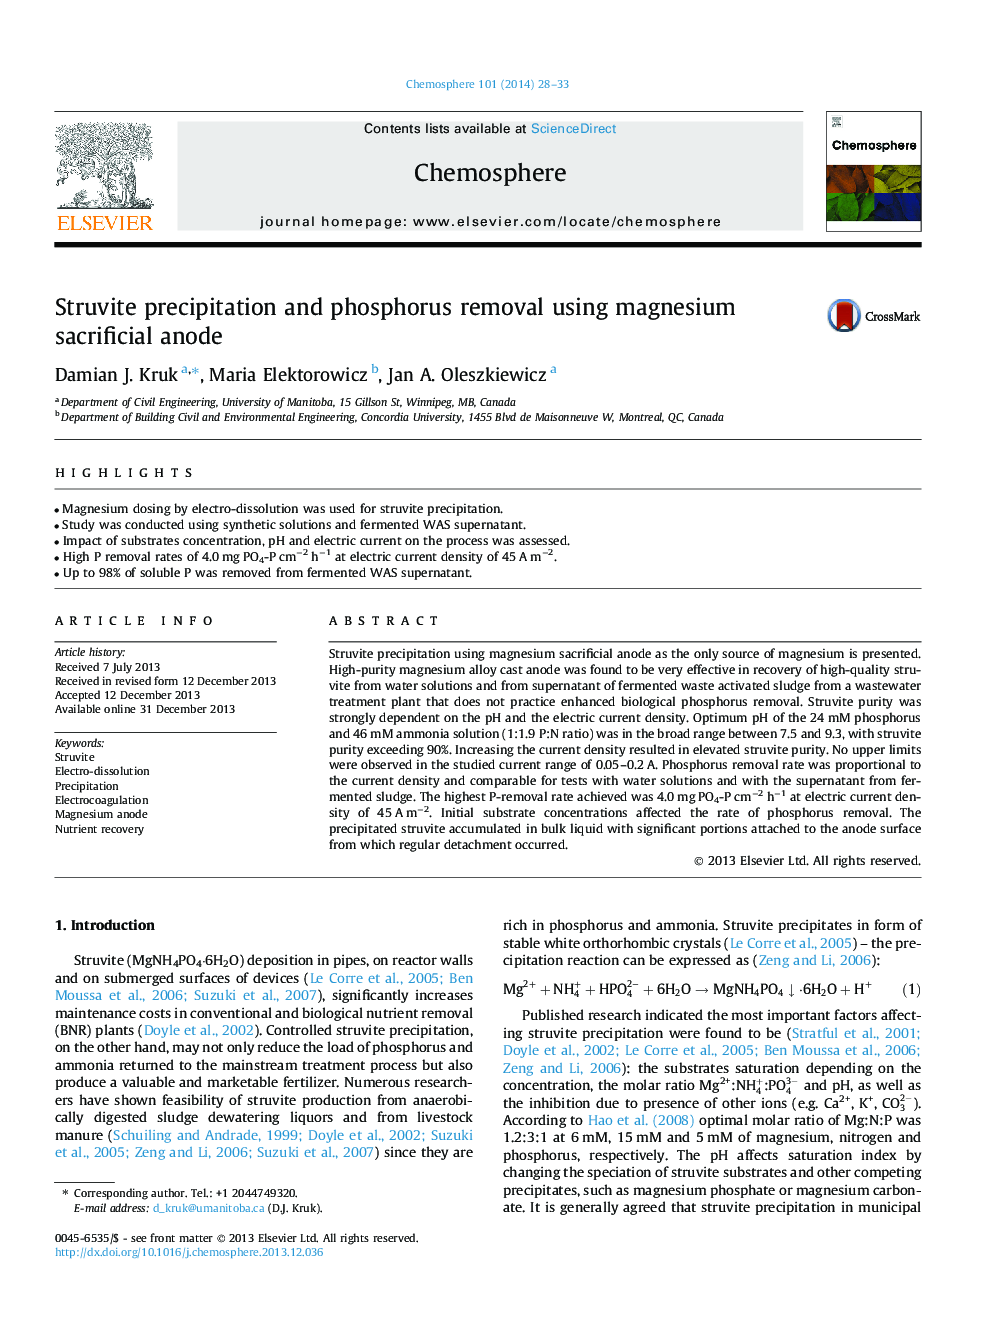 Struvite precipitation and phosphorus removal using magnesium sacrificial anode